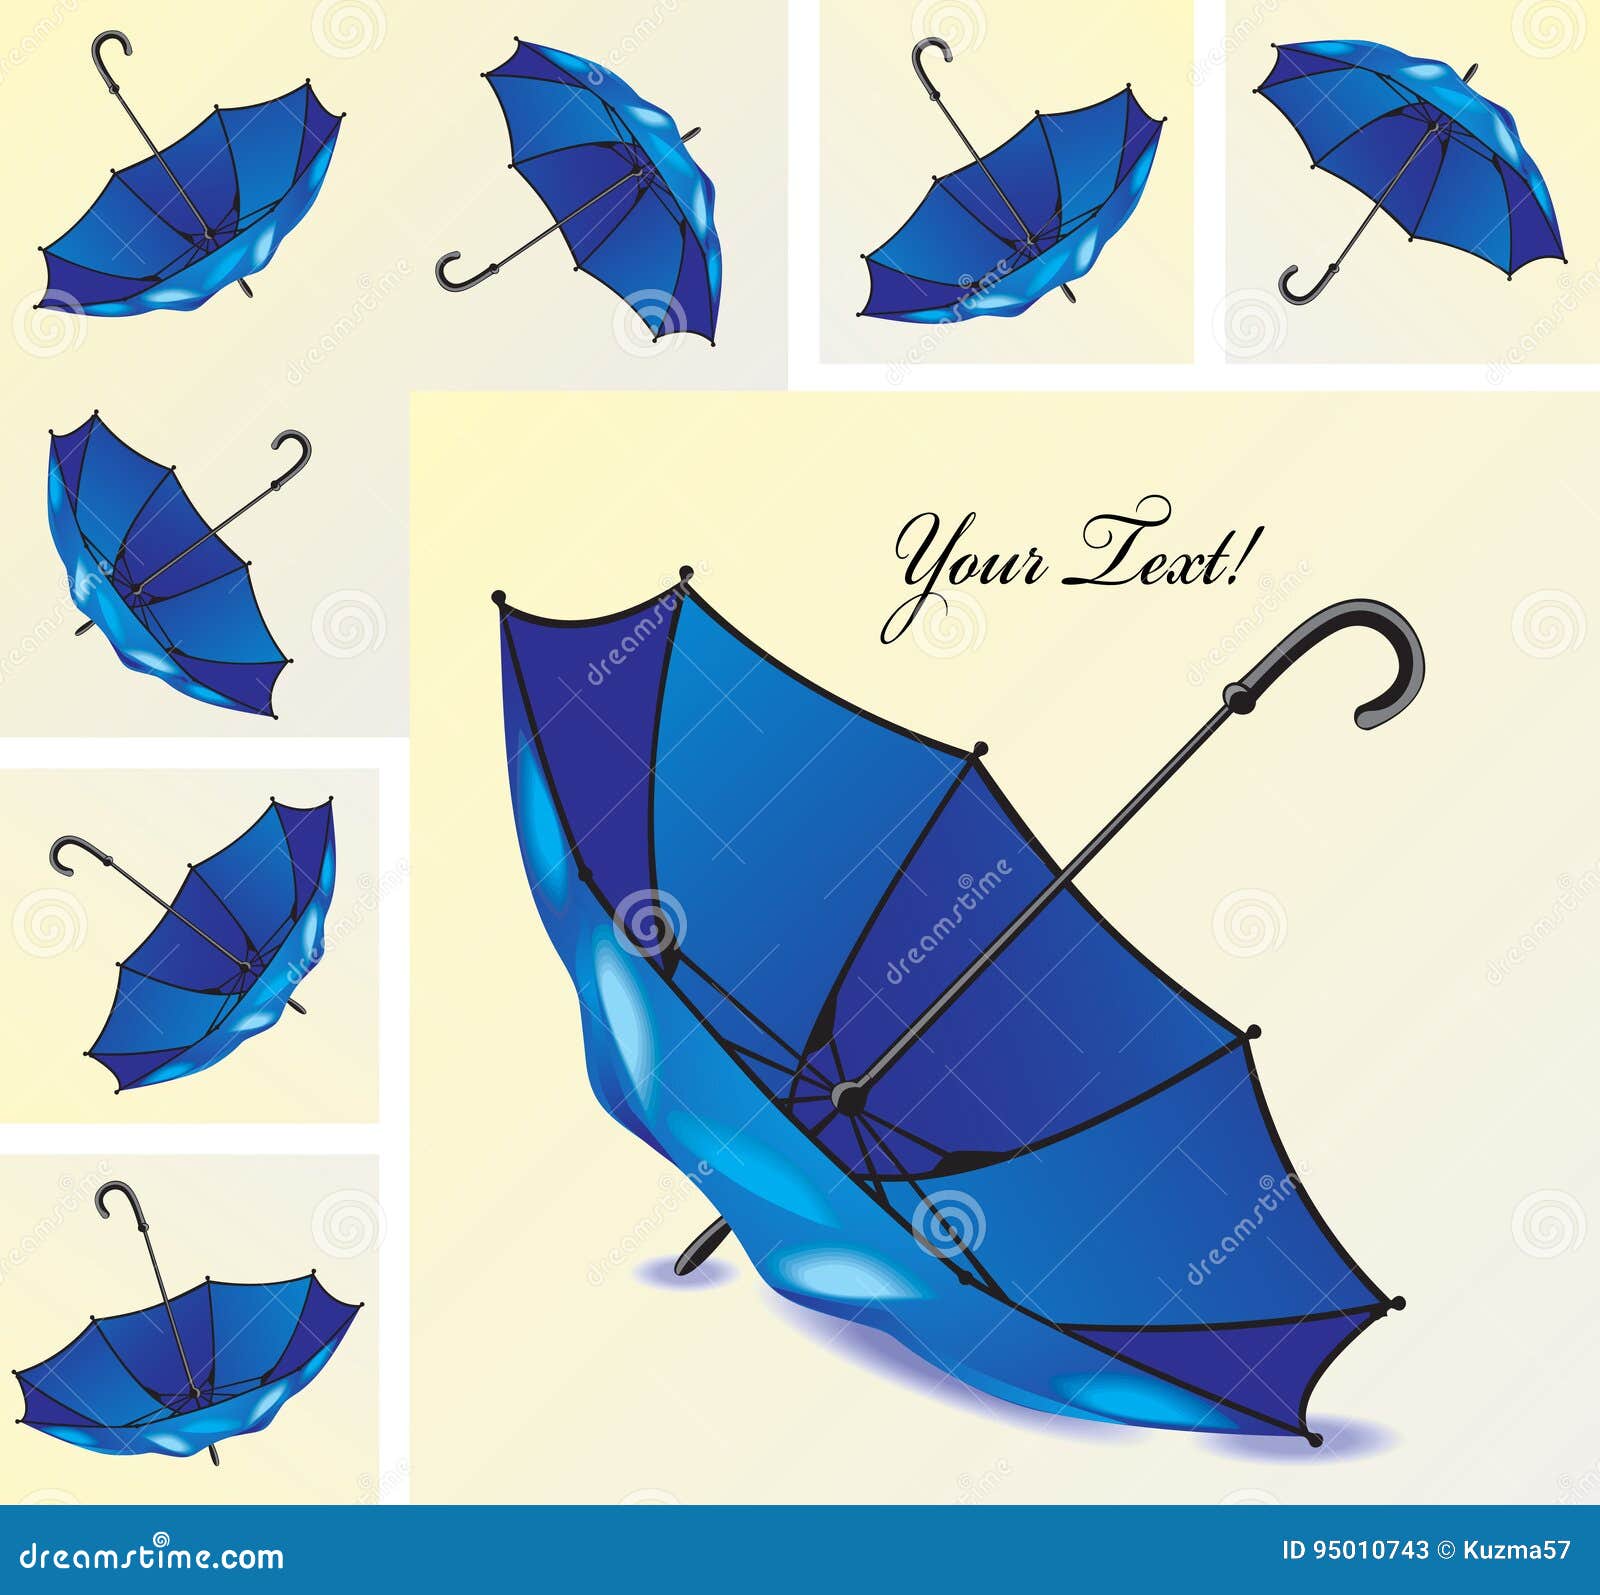 蓝色伞 库存图片. 图片 包括有 蓝色, 保护, 遮阳伞, 空白, 开放, 查出, 天气, 背包 - 23494991